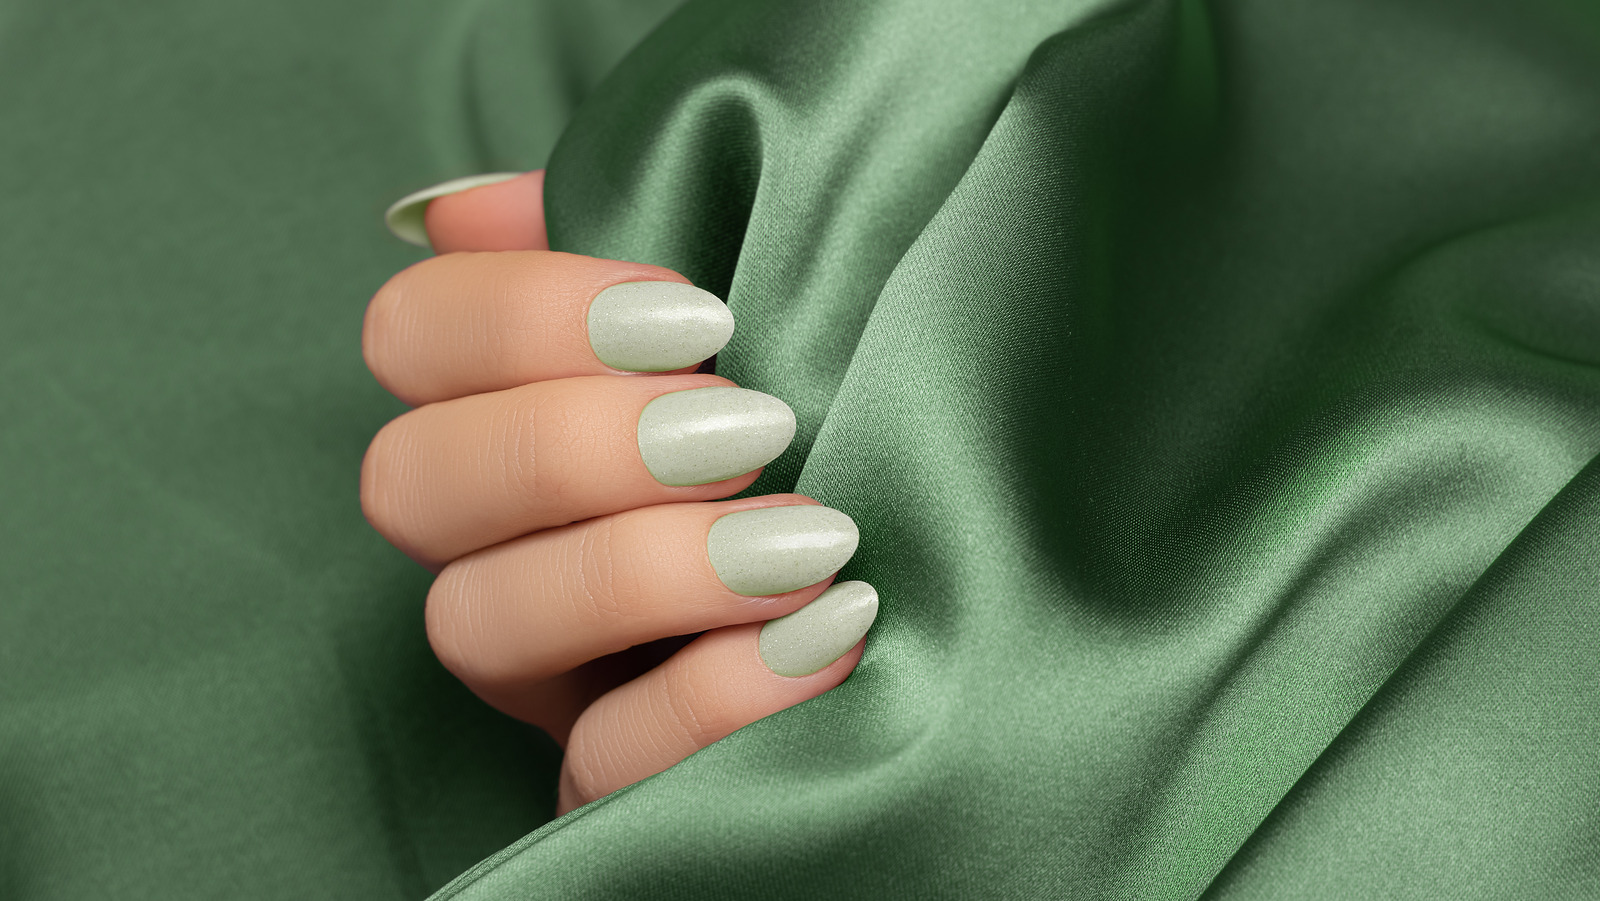 Green nail polish: foto stock e illustrazioni - 36.393 immagini |  Shutterstock